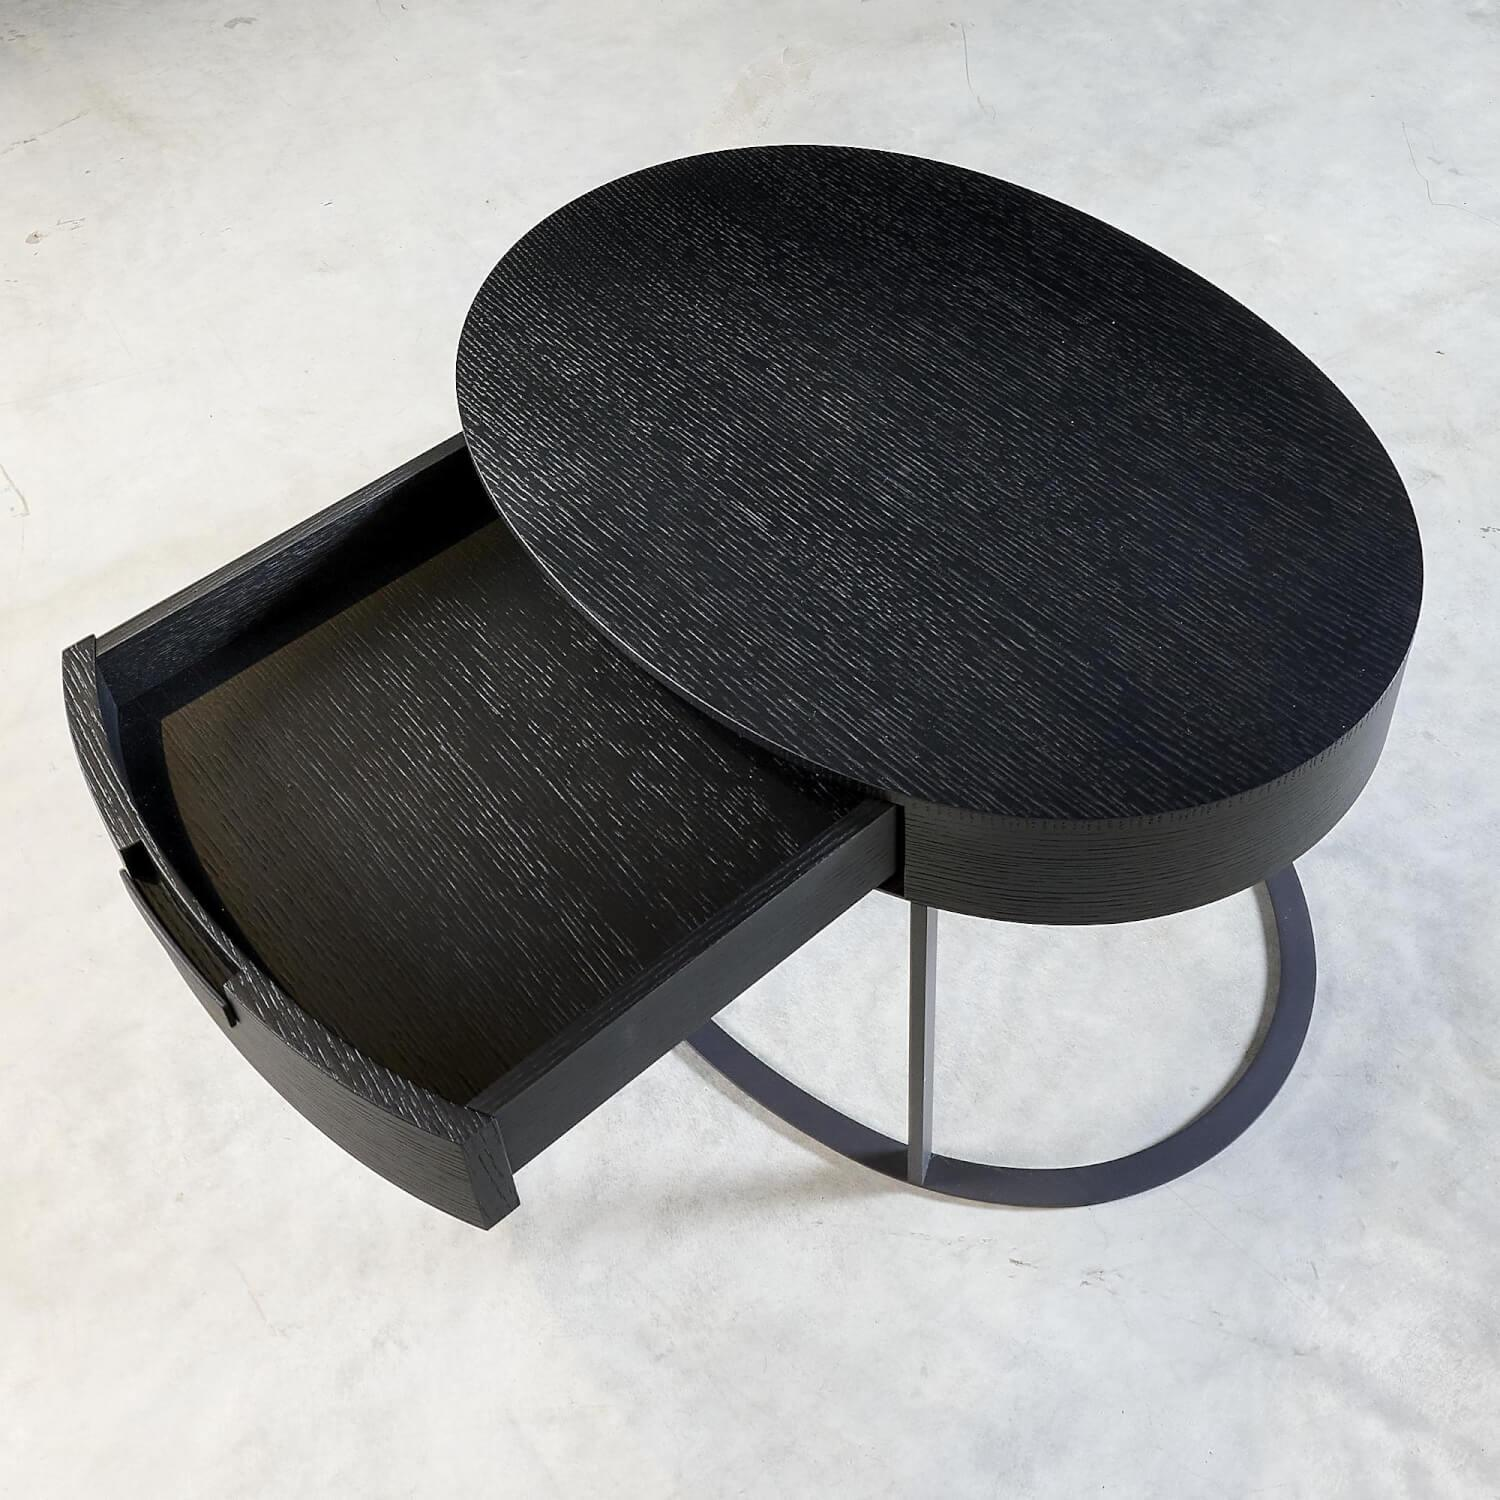 Nachttisch Beistelltisch AMPHORA Oval Gestell Stahl Graphit Lackiert 0252g Tischplatte Eiche Schwarz Gebürstet 0381n